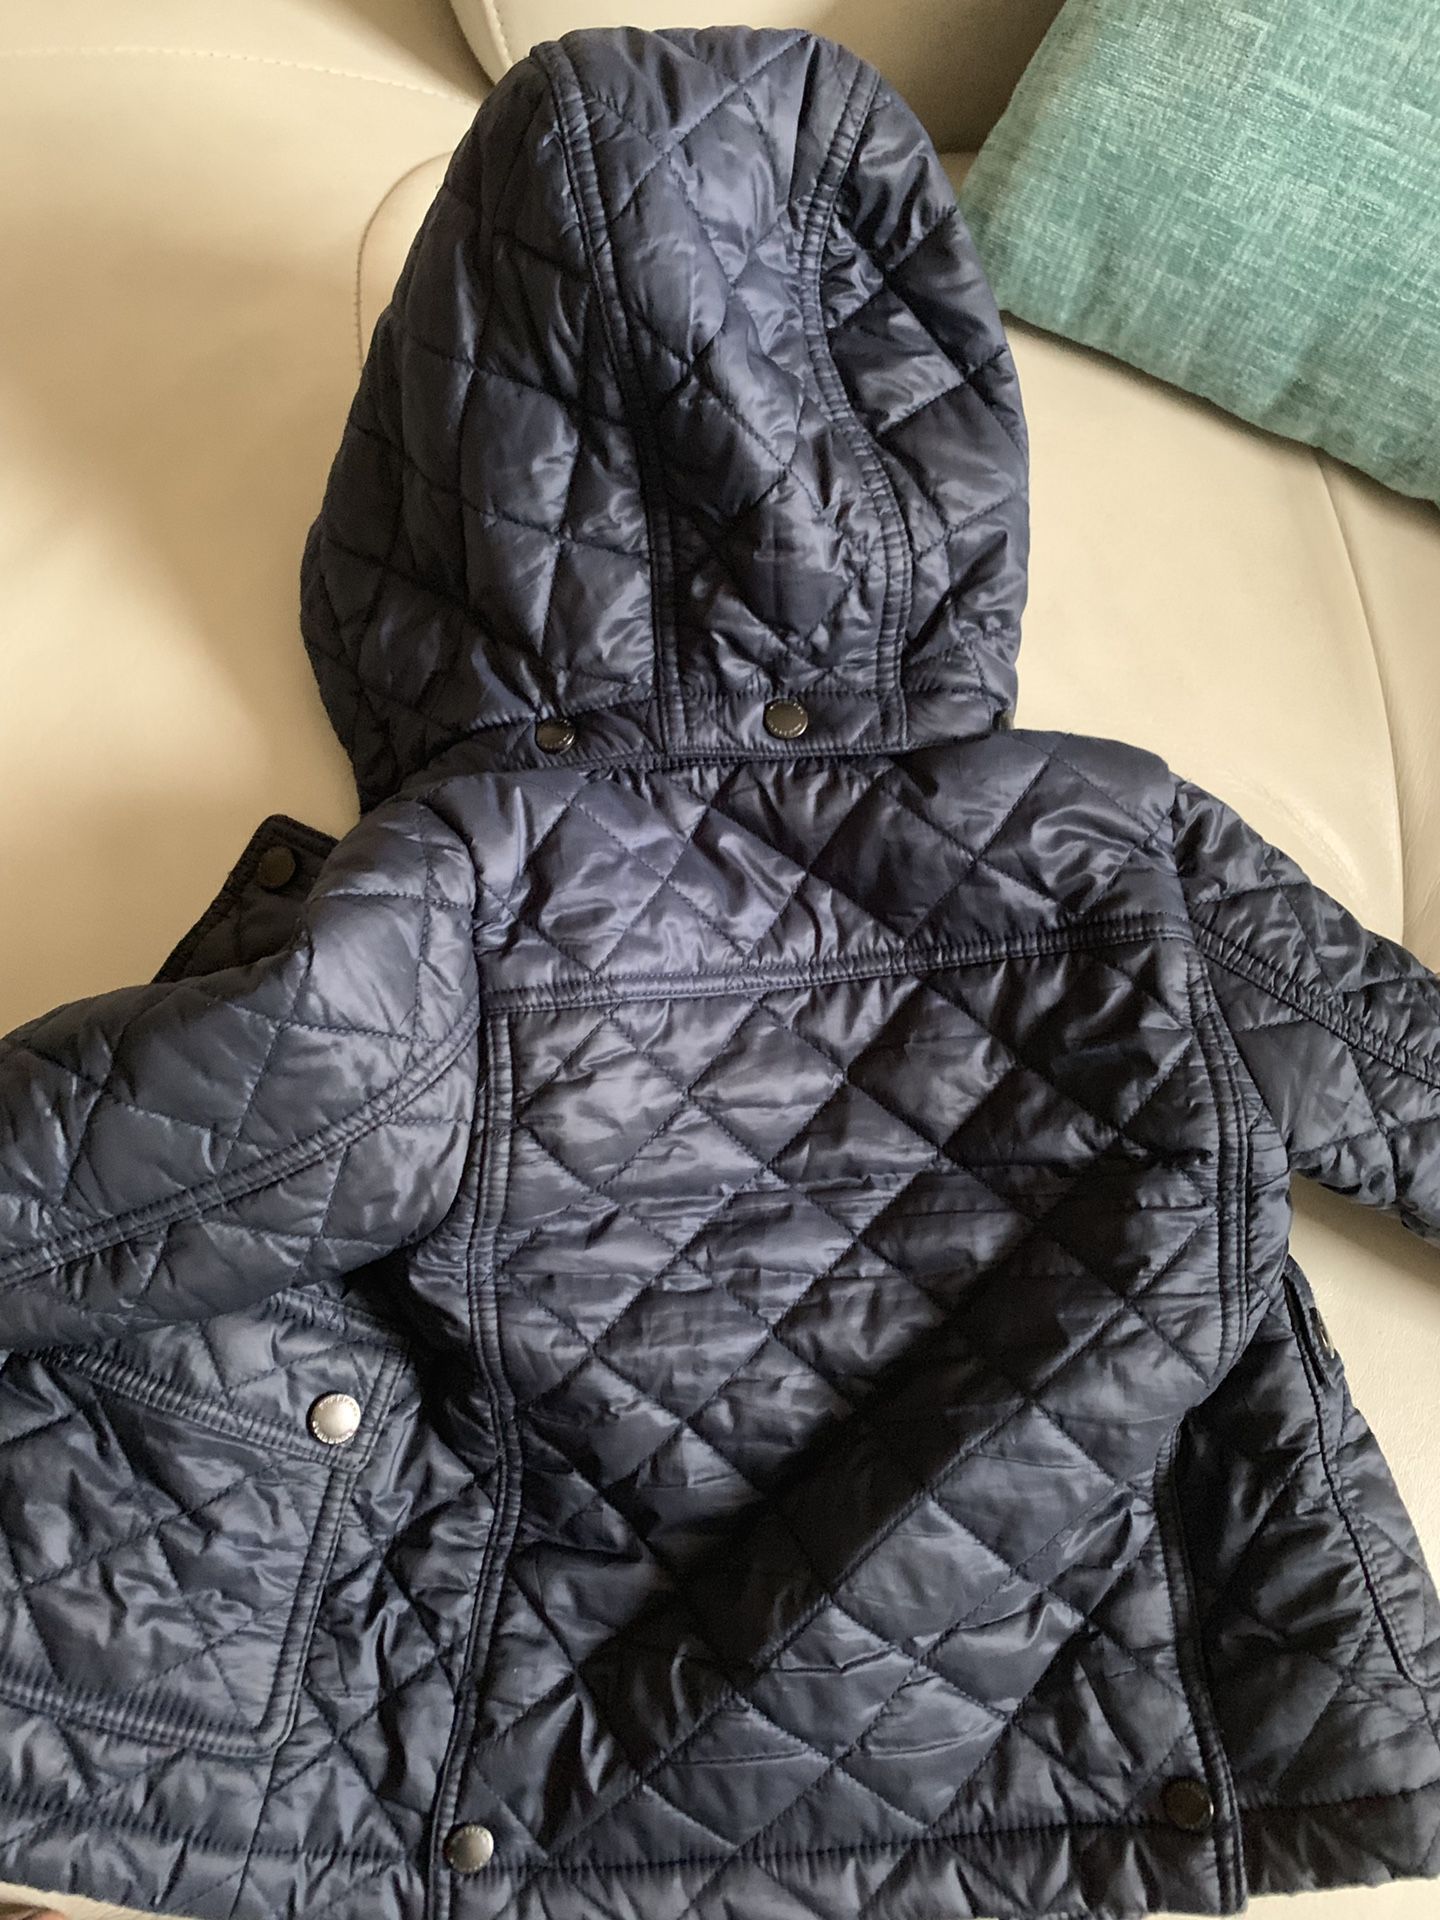 Burberry jacket 9mths